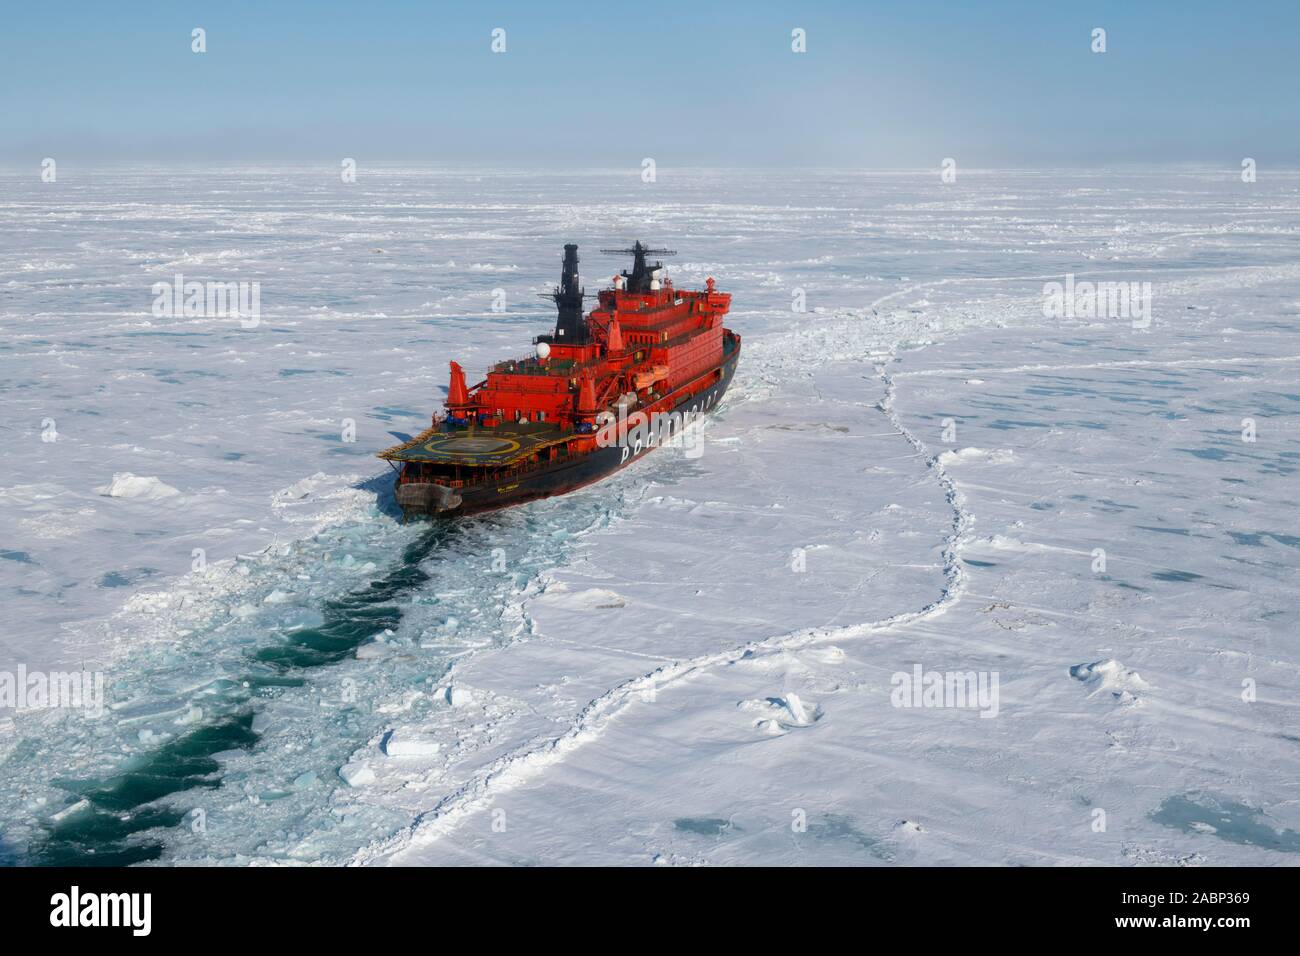 Rusia. Vista aérea de rompehielos nuclear ruso, de 50 años de Victoria a través de romper el hielo en el Ártico alto a 85,6 grados de latitud norte en el camino a la Foto de stock